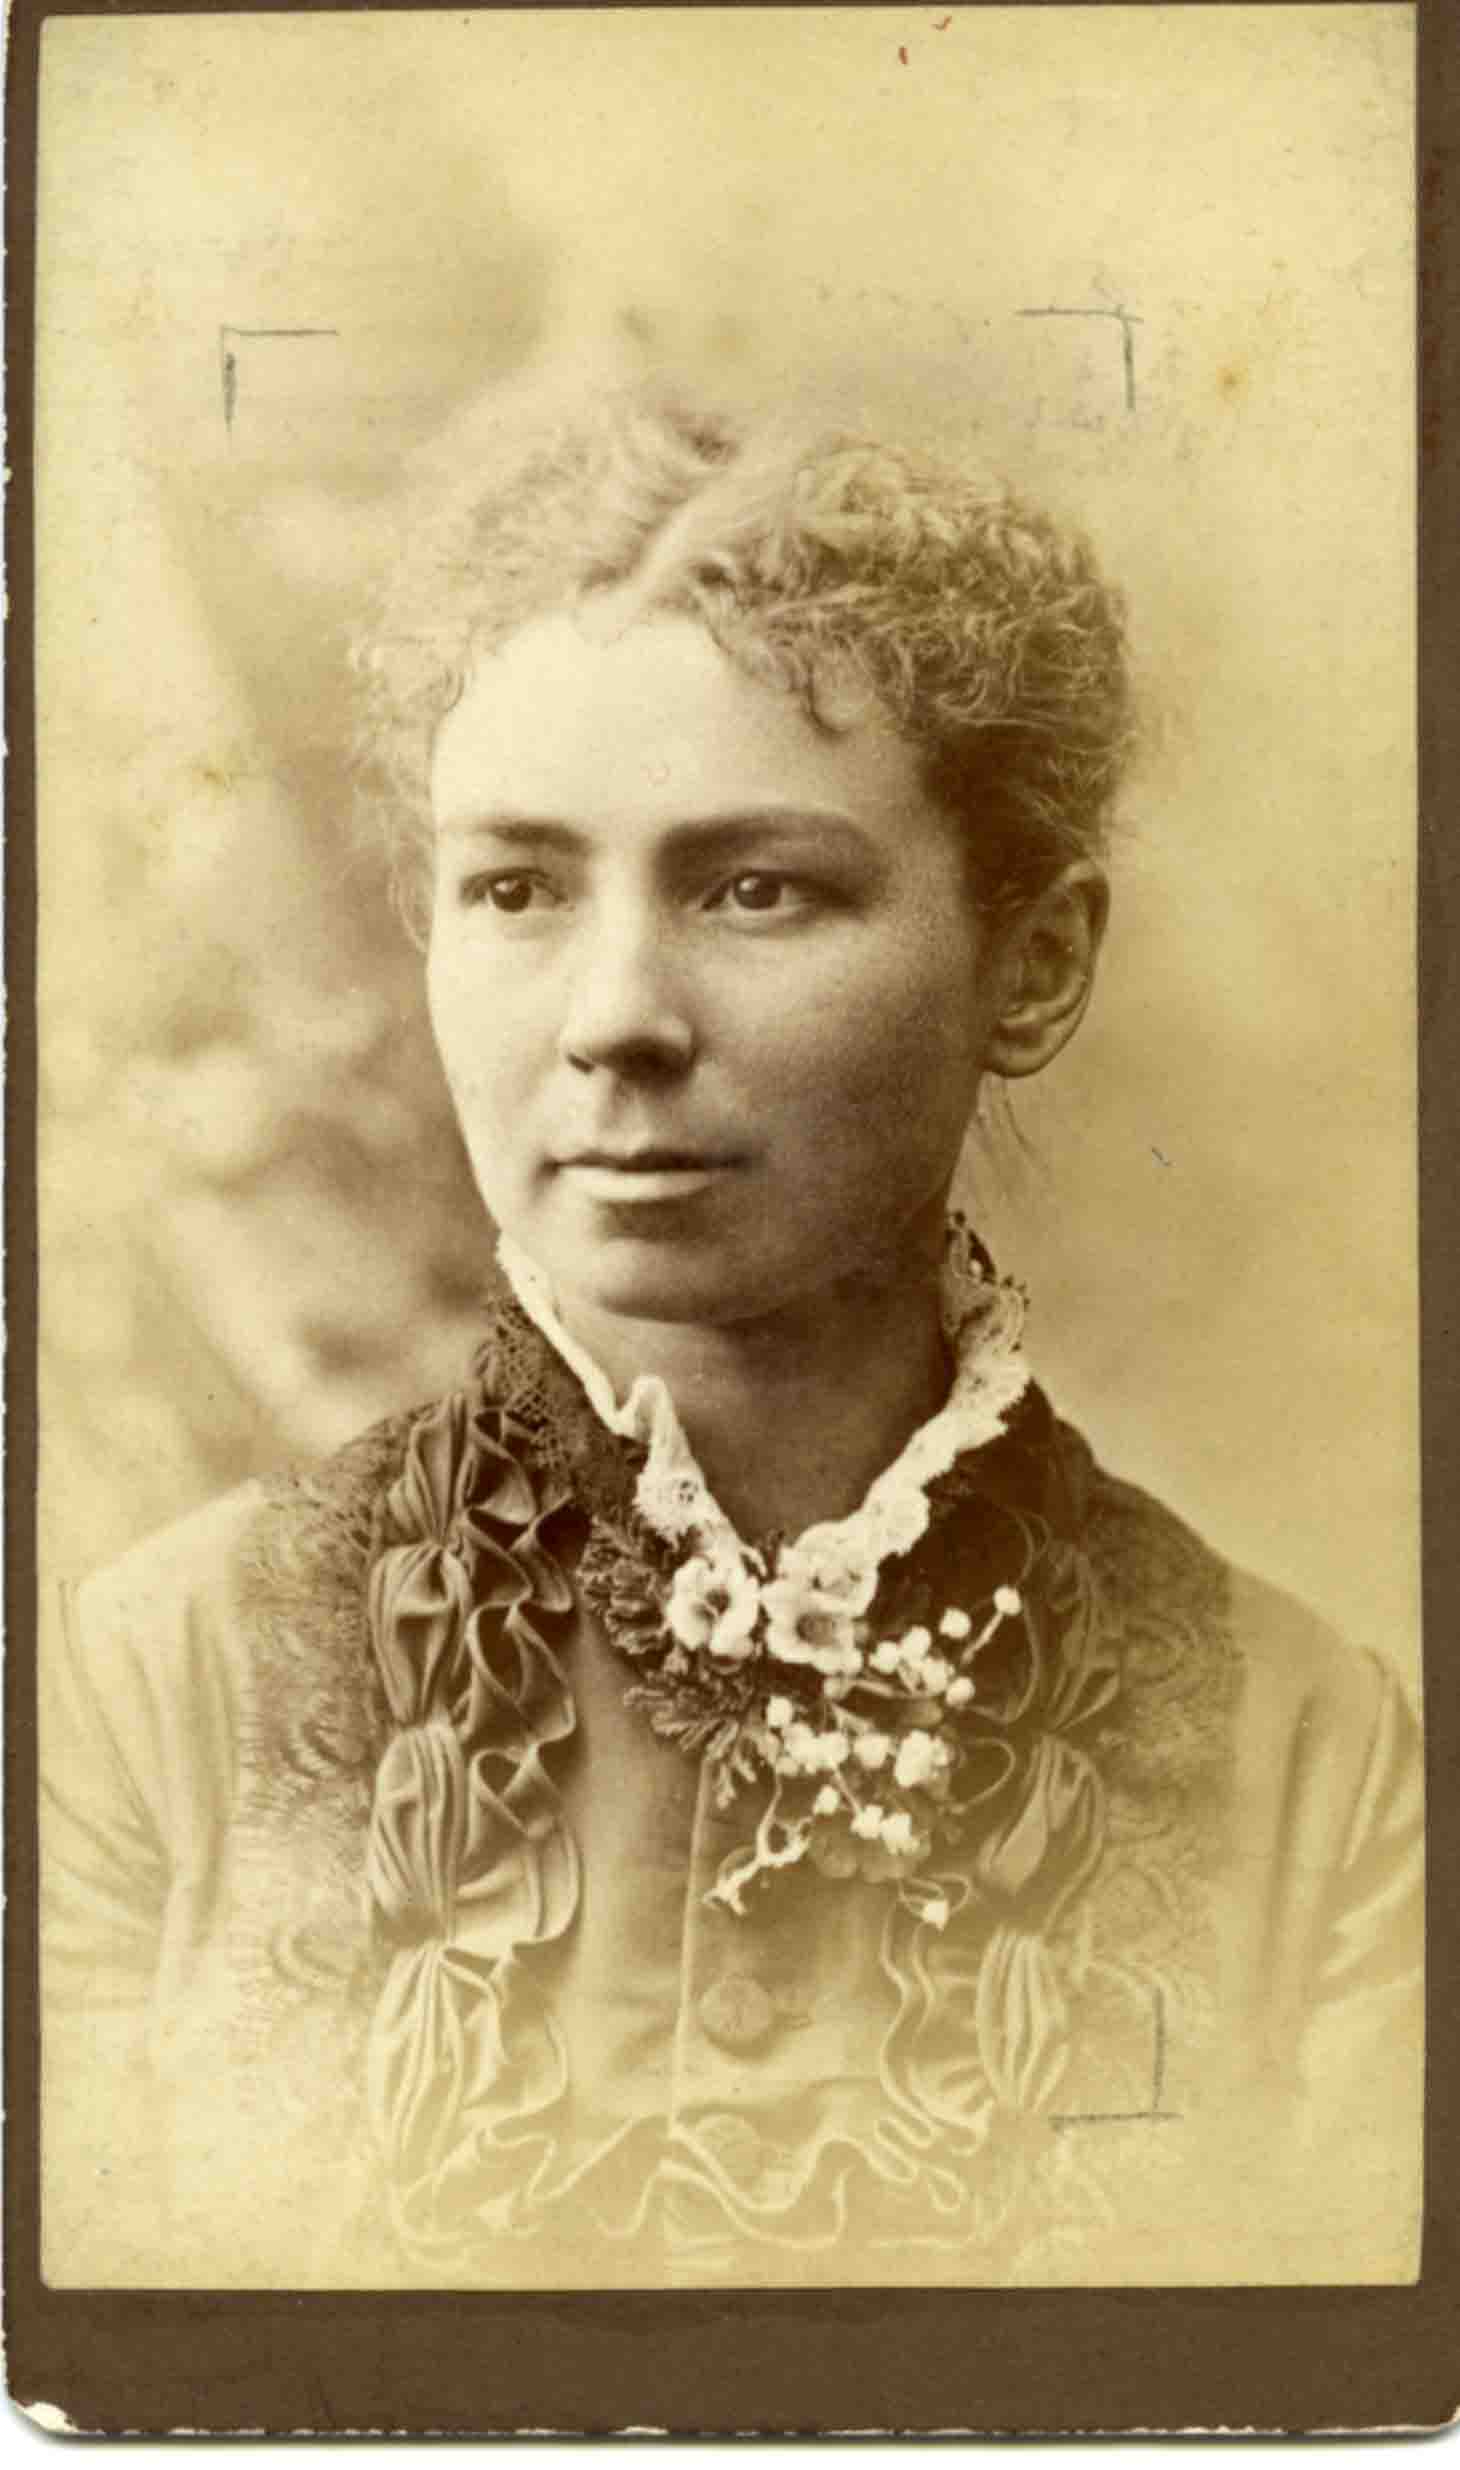 Frances M. Hague (1852-1936) - Portrait photograph courtesy of Knox College Library.